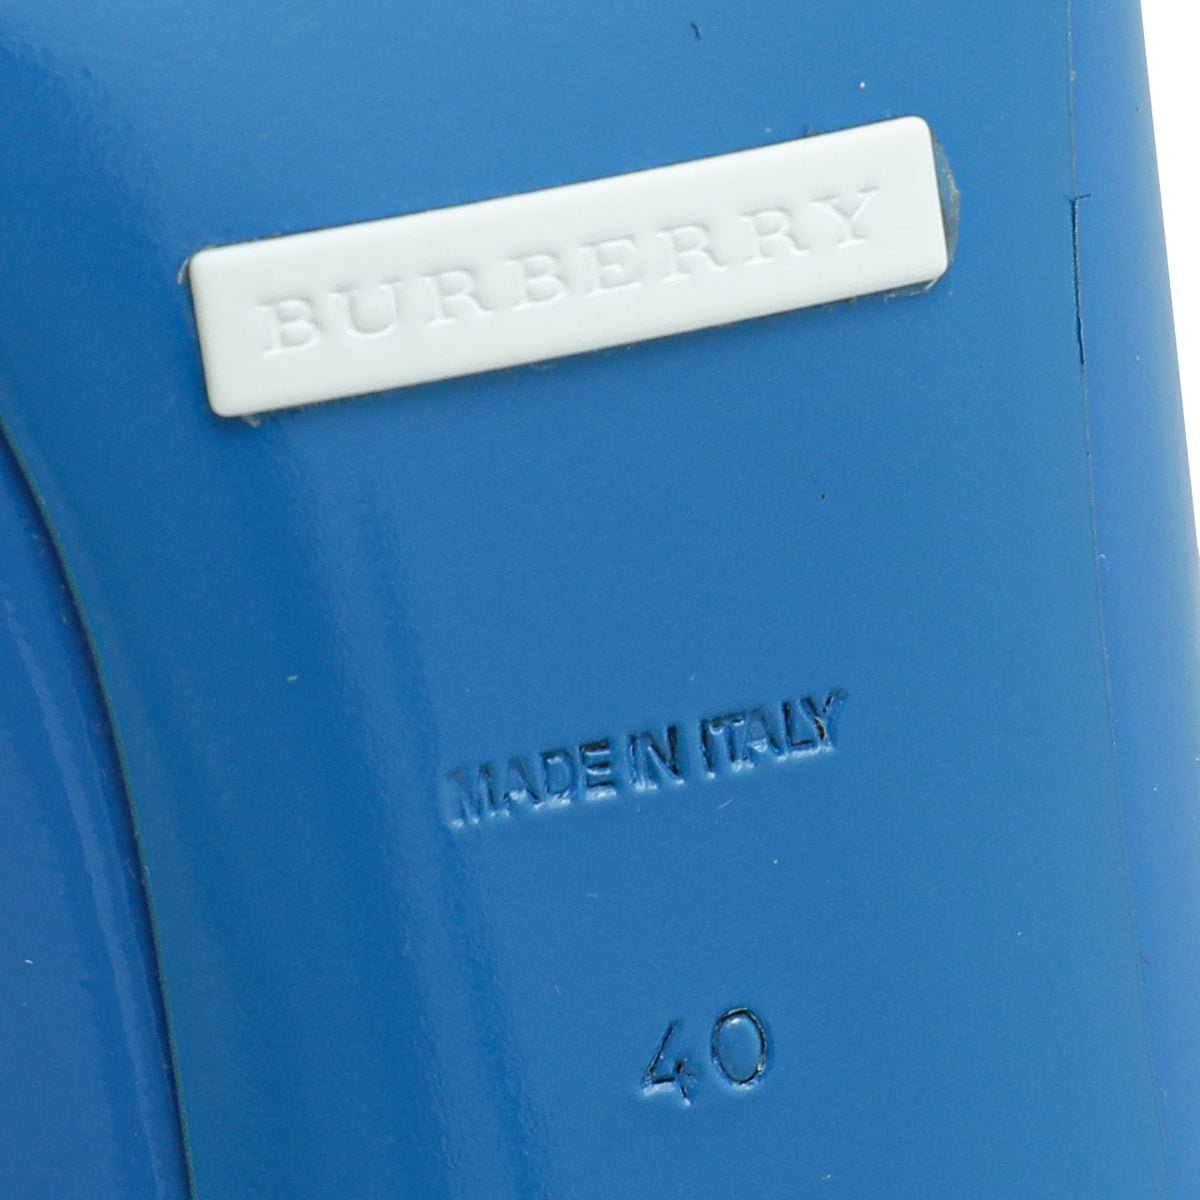 Burberry - Burberry Blue Finsbury Bow Pumps 40 | The Closet